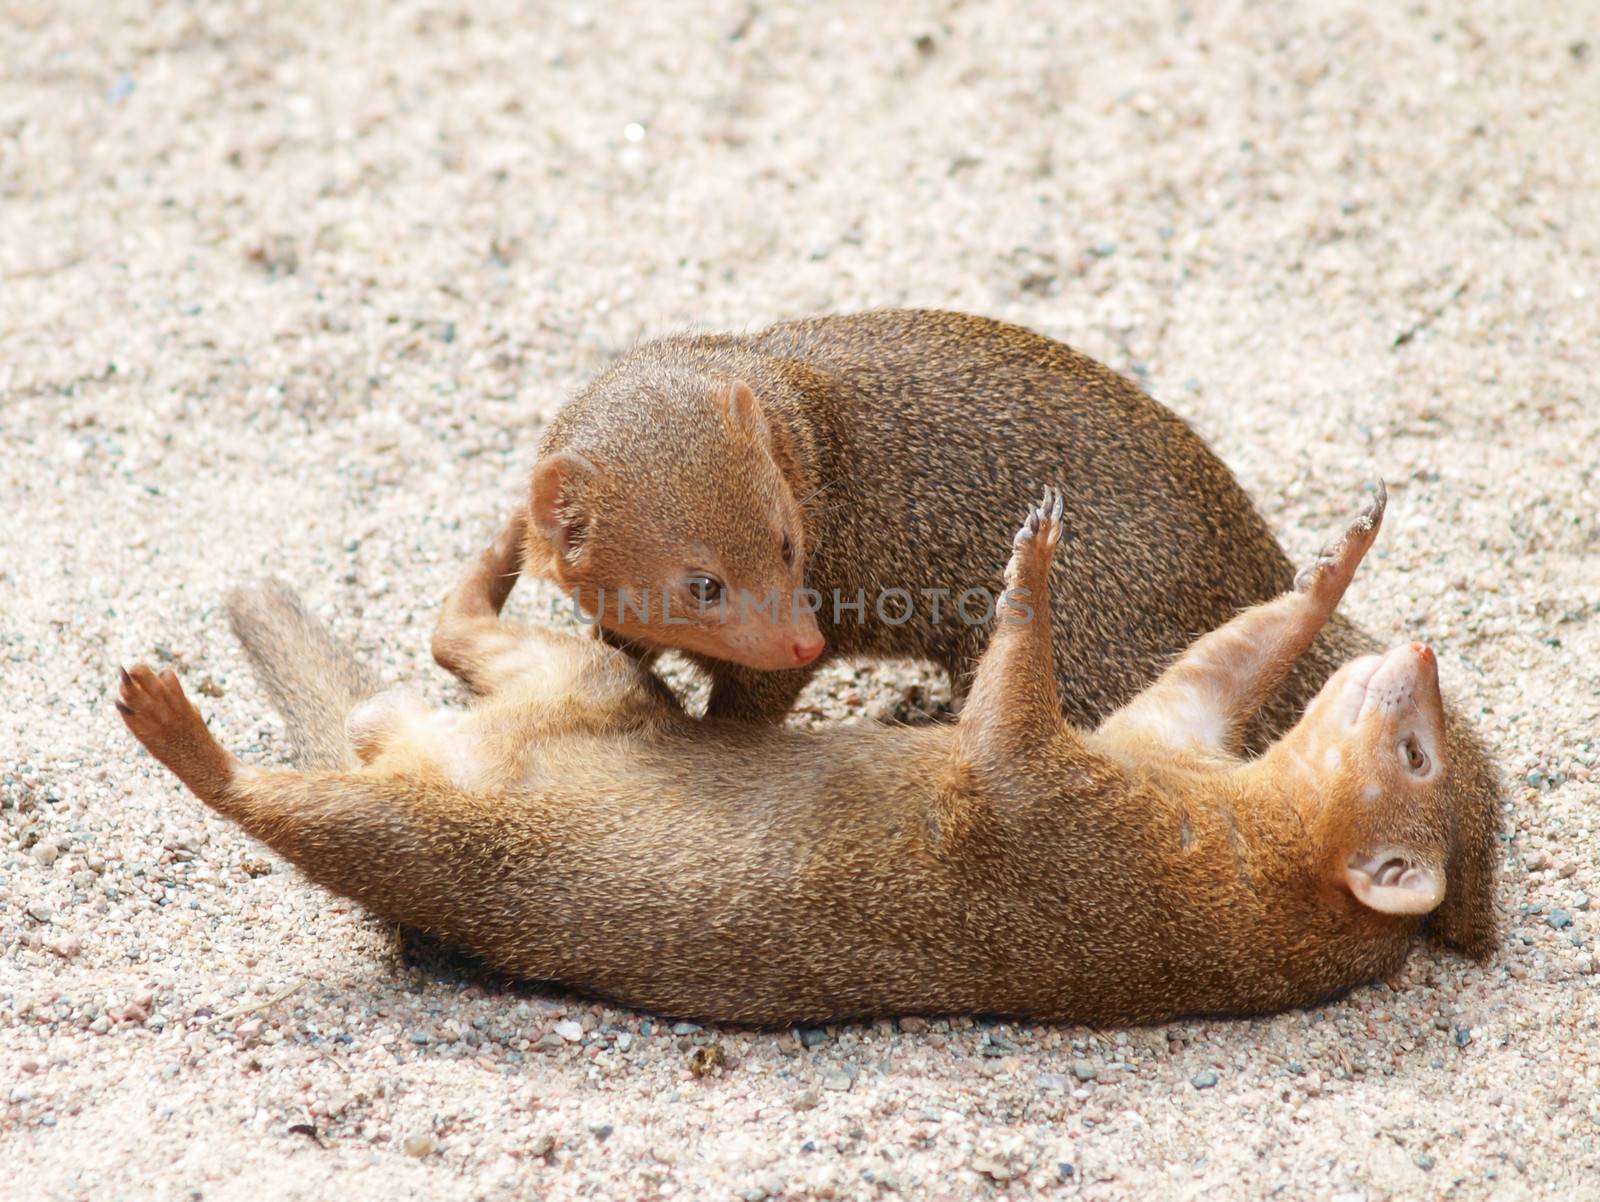 Dwarf mongoose by Arvebettum